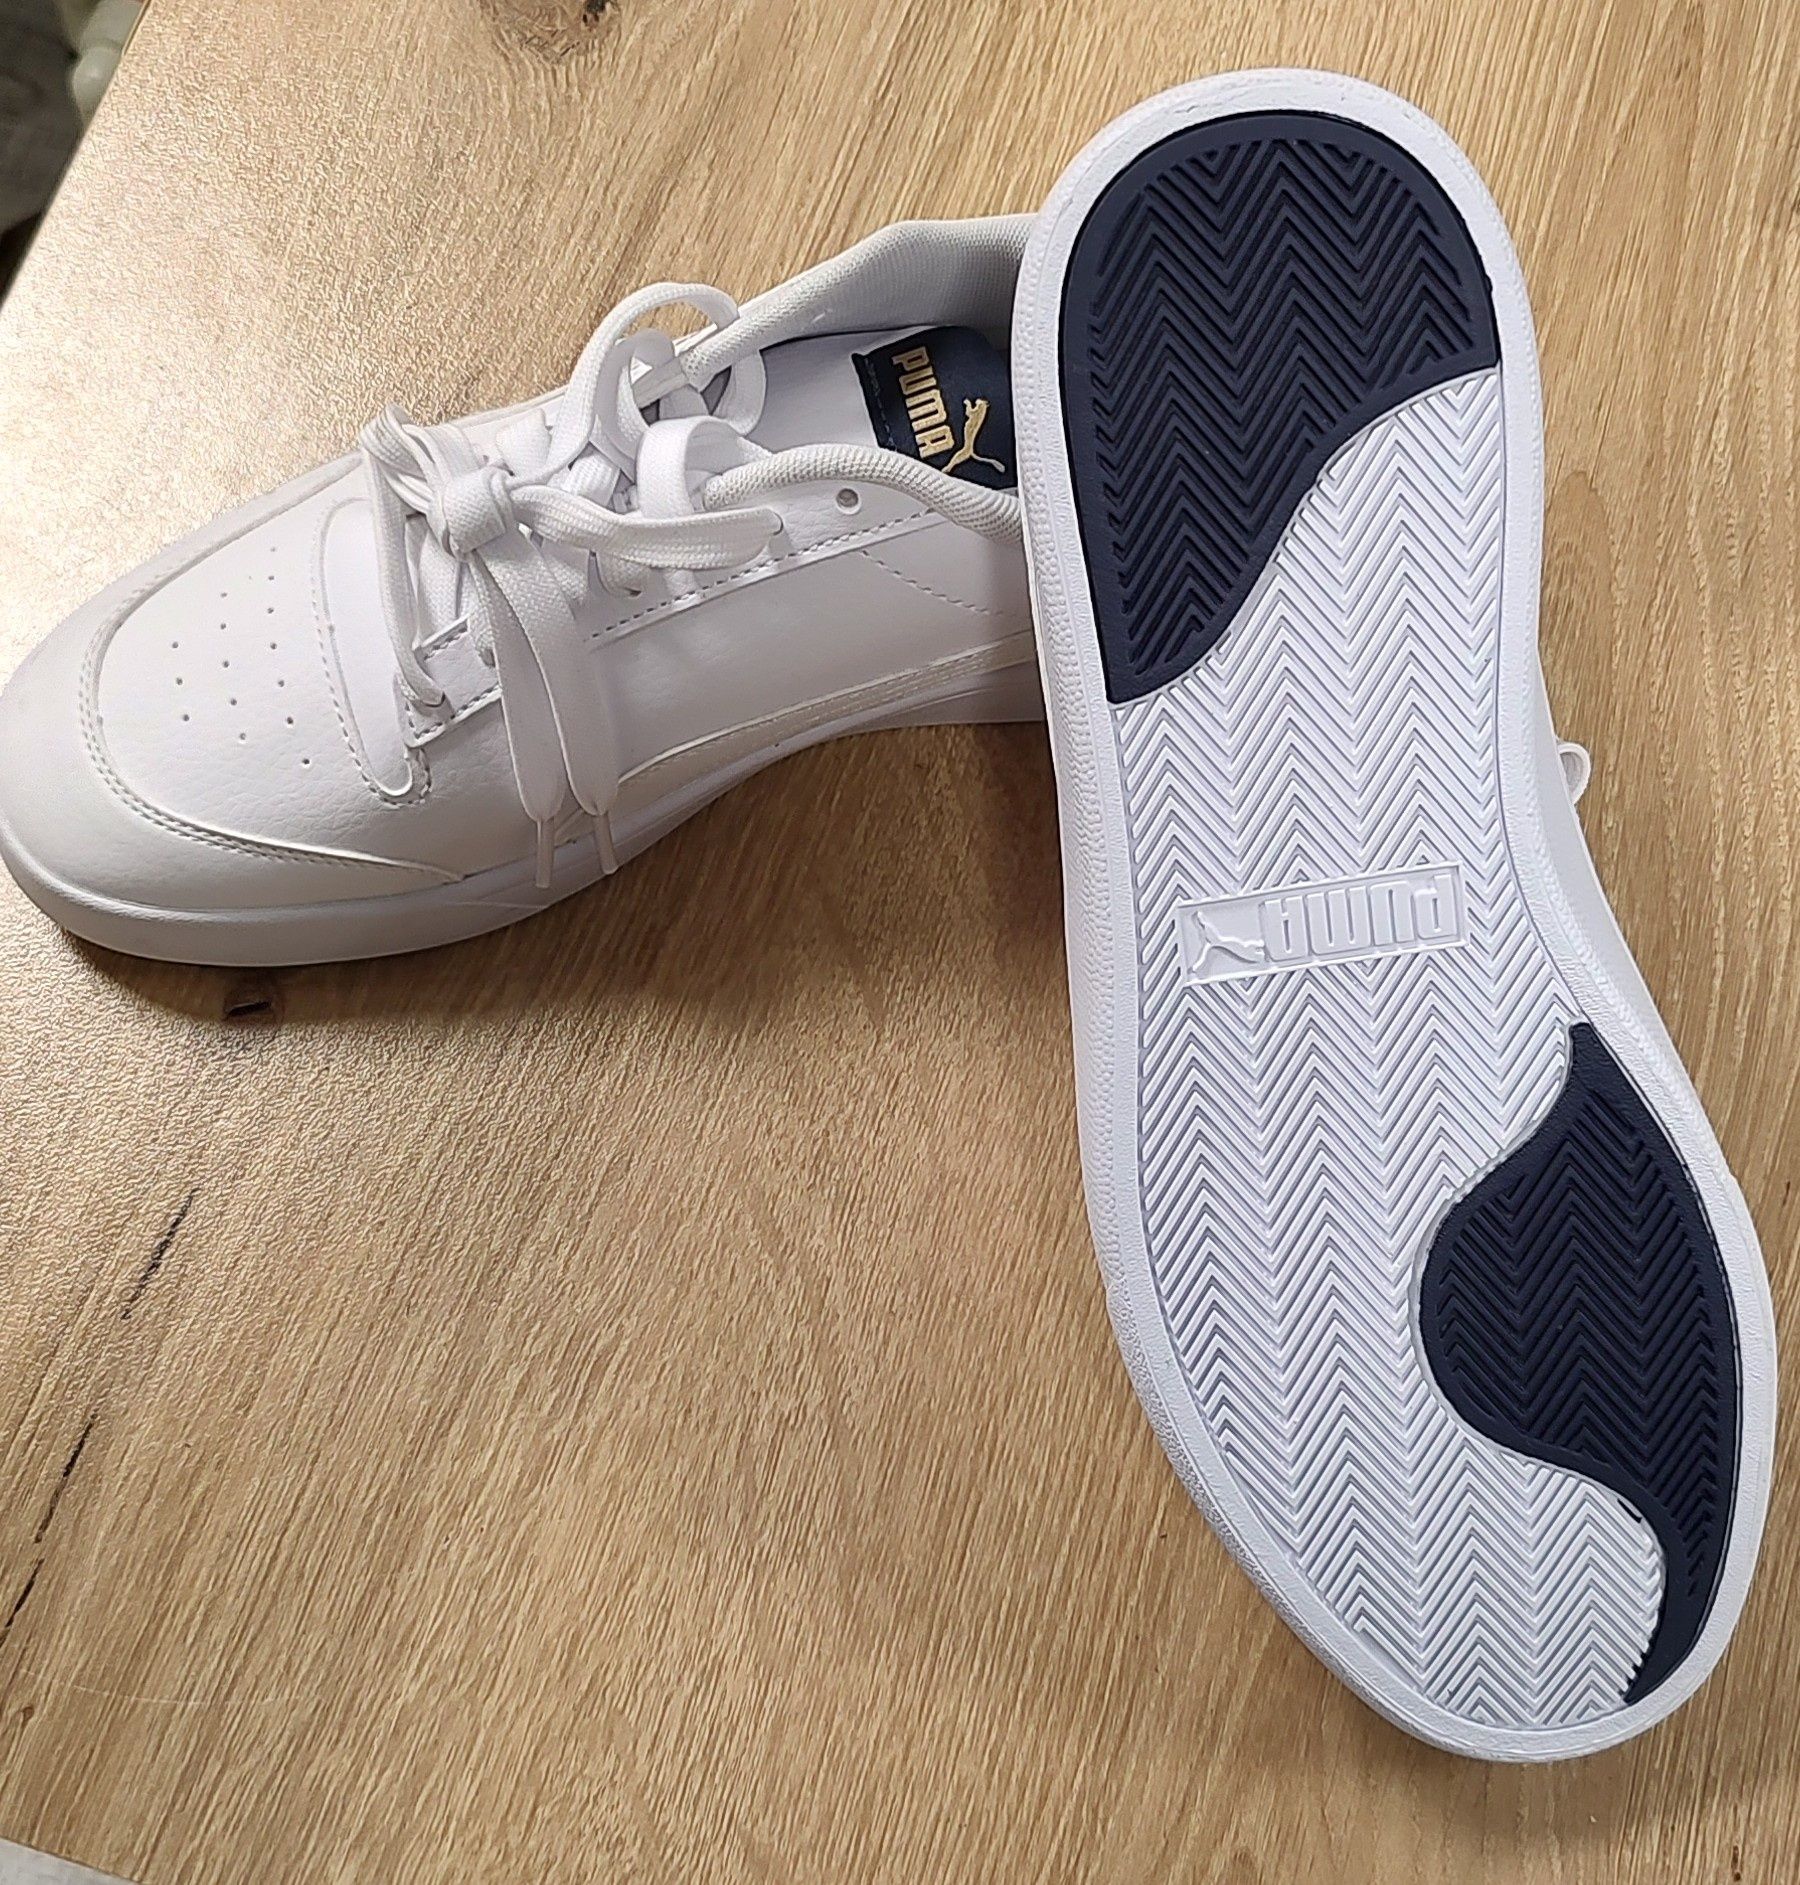 Спортни обувки Puma
Спортни обувки Shuffle от еко кожа
Спортни обувки